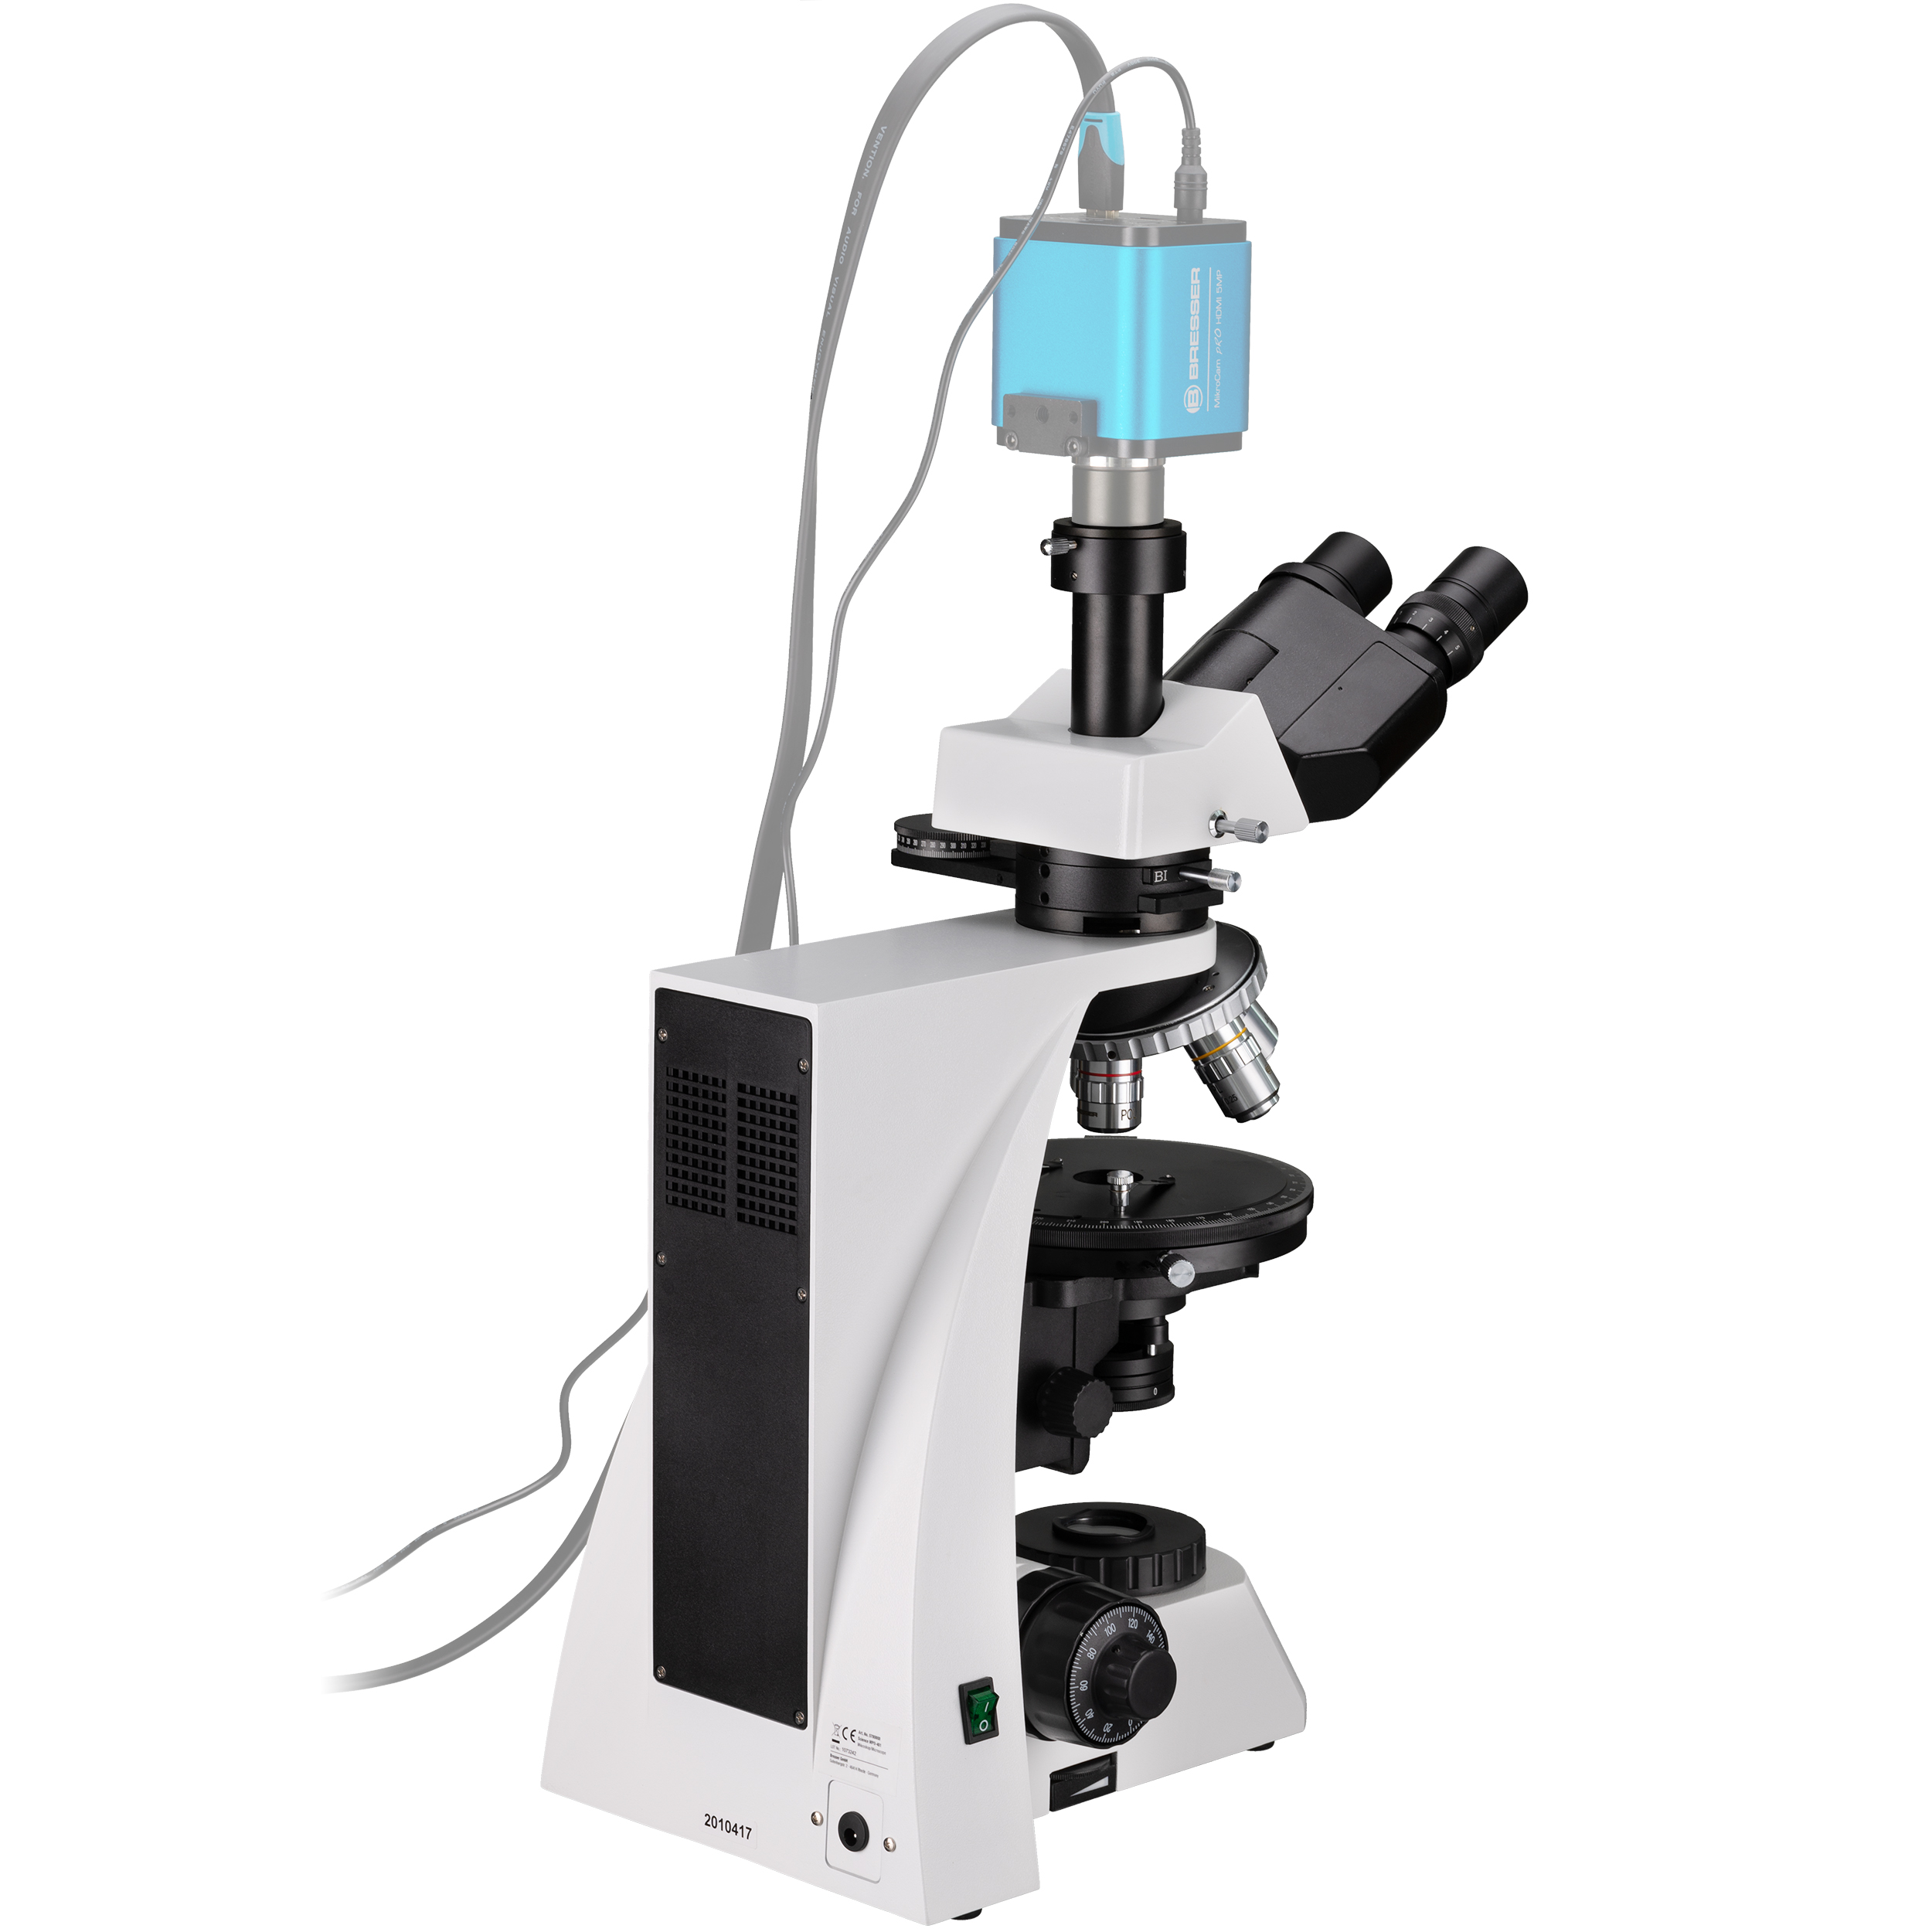 BRESSER Science MPO 401 Microscope